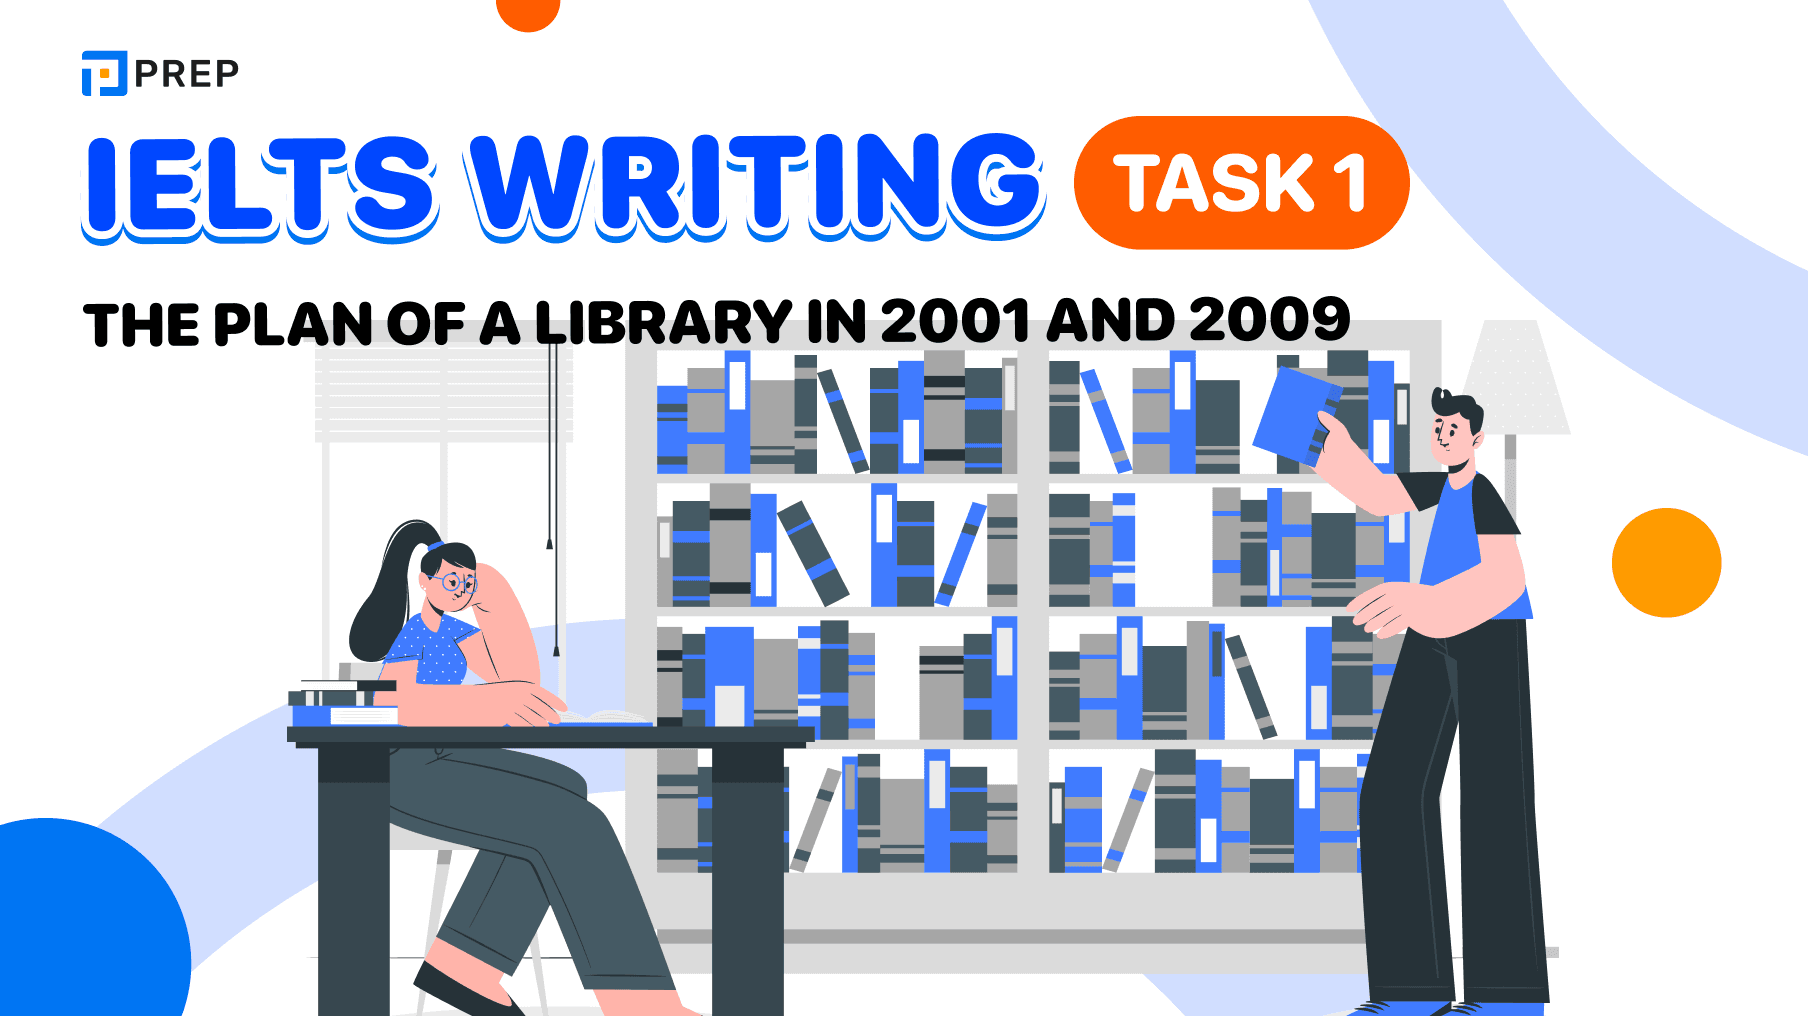 Đề bài, bài mẫu IELTS Writing Task 1: The plan of a library in 2001 and 2009